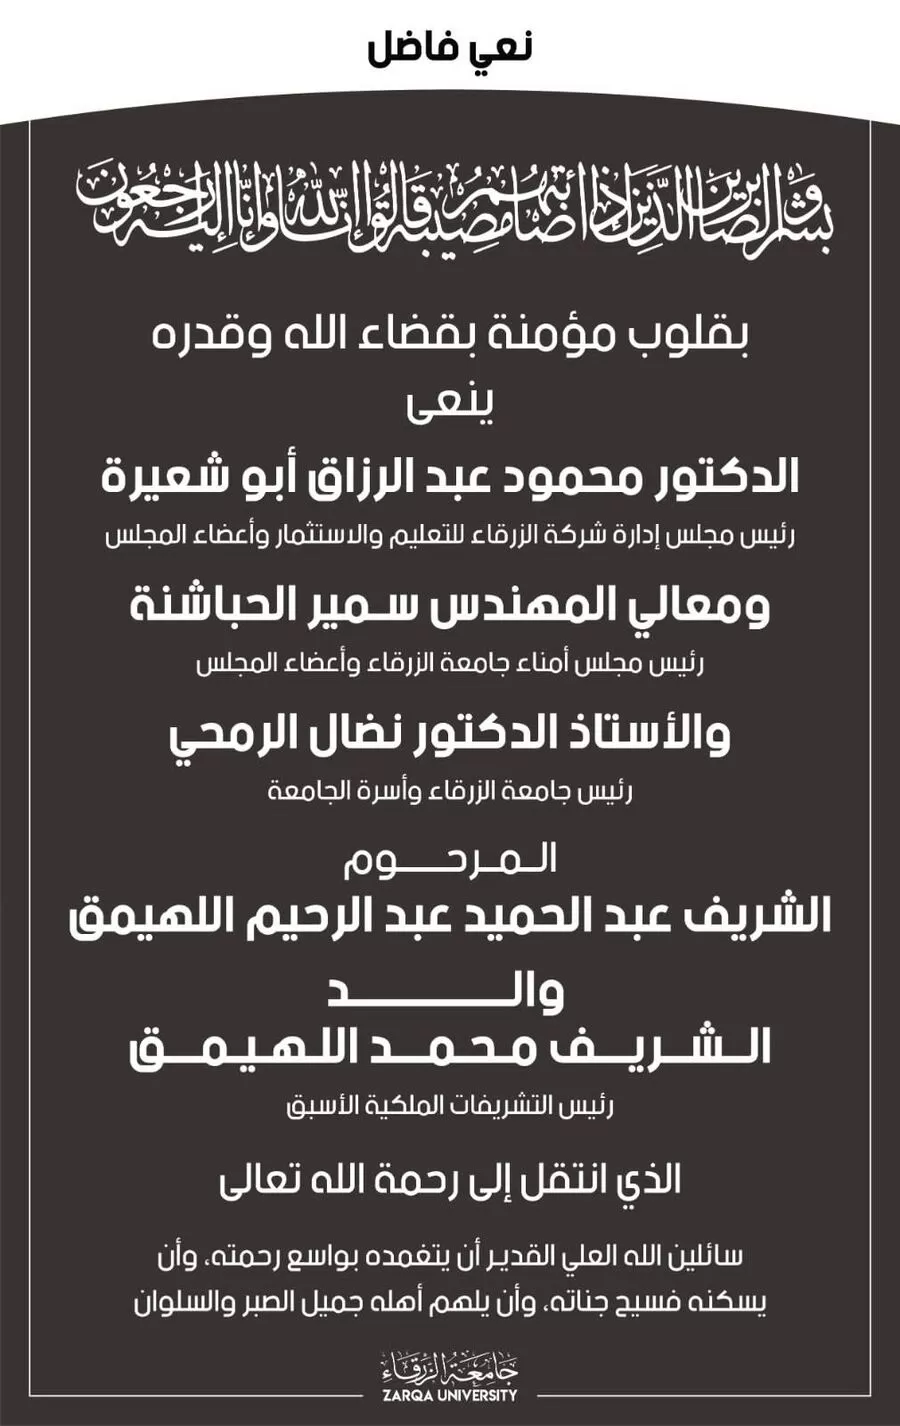 مدار الساعة, وفيات اليوم في الأردن,جامعة الزرقاء